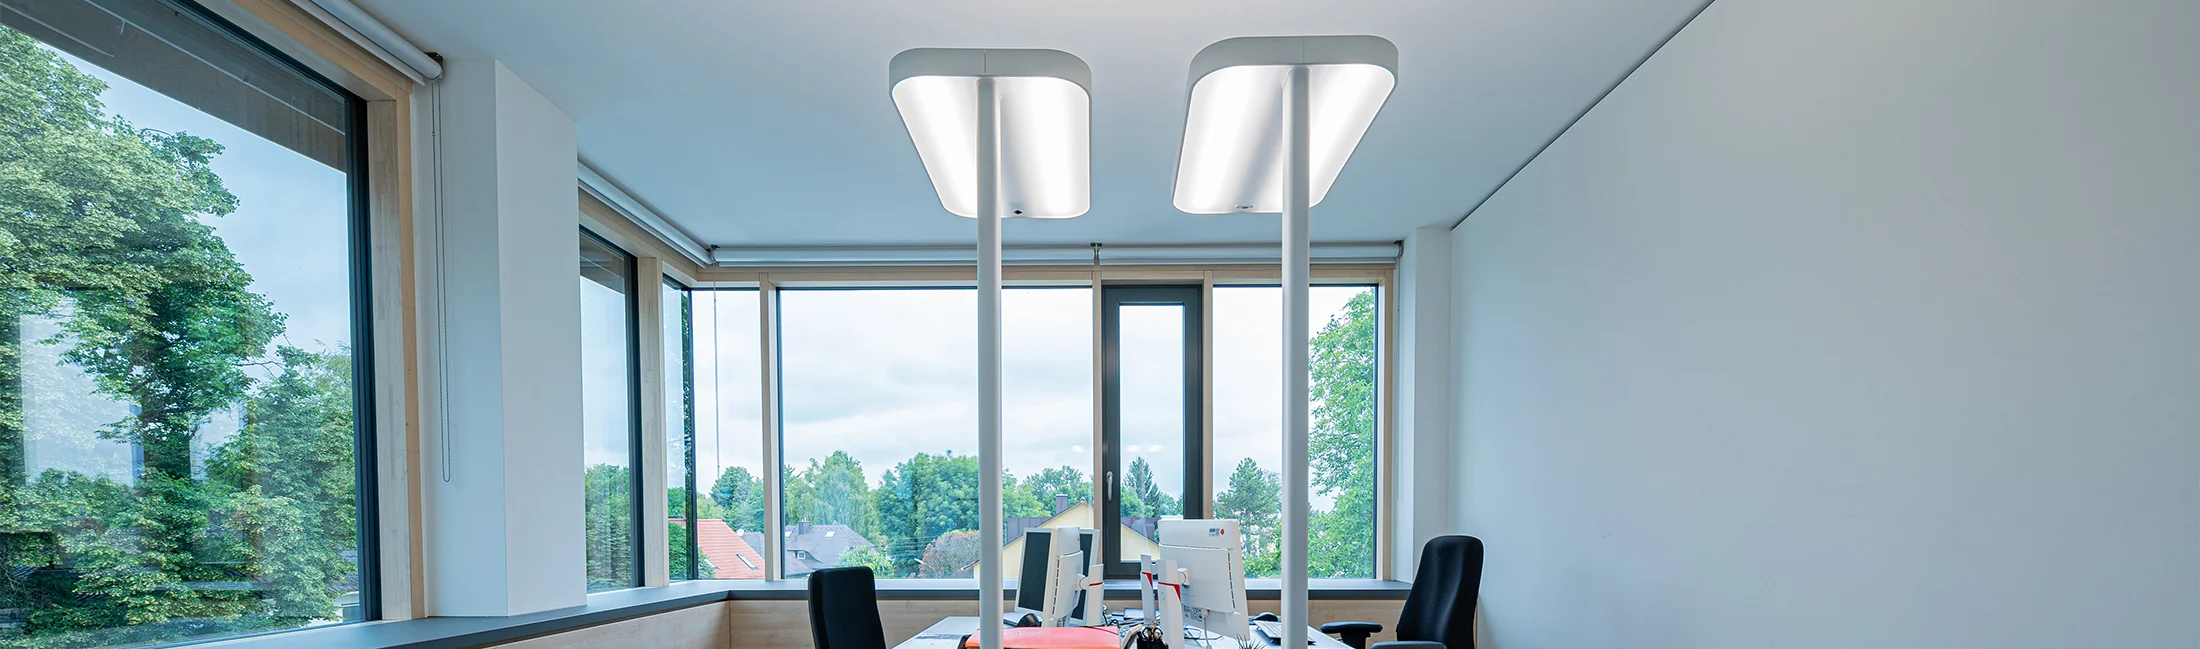 Büro Ausleuchtung die mit Stehleuchte Eine LED optimale für